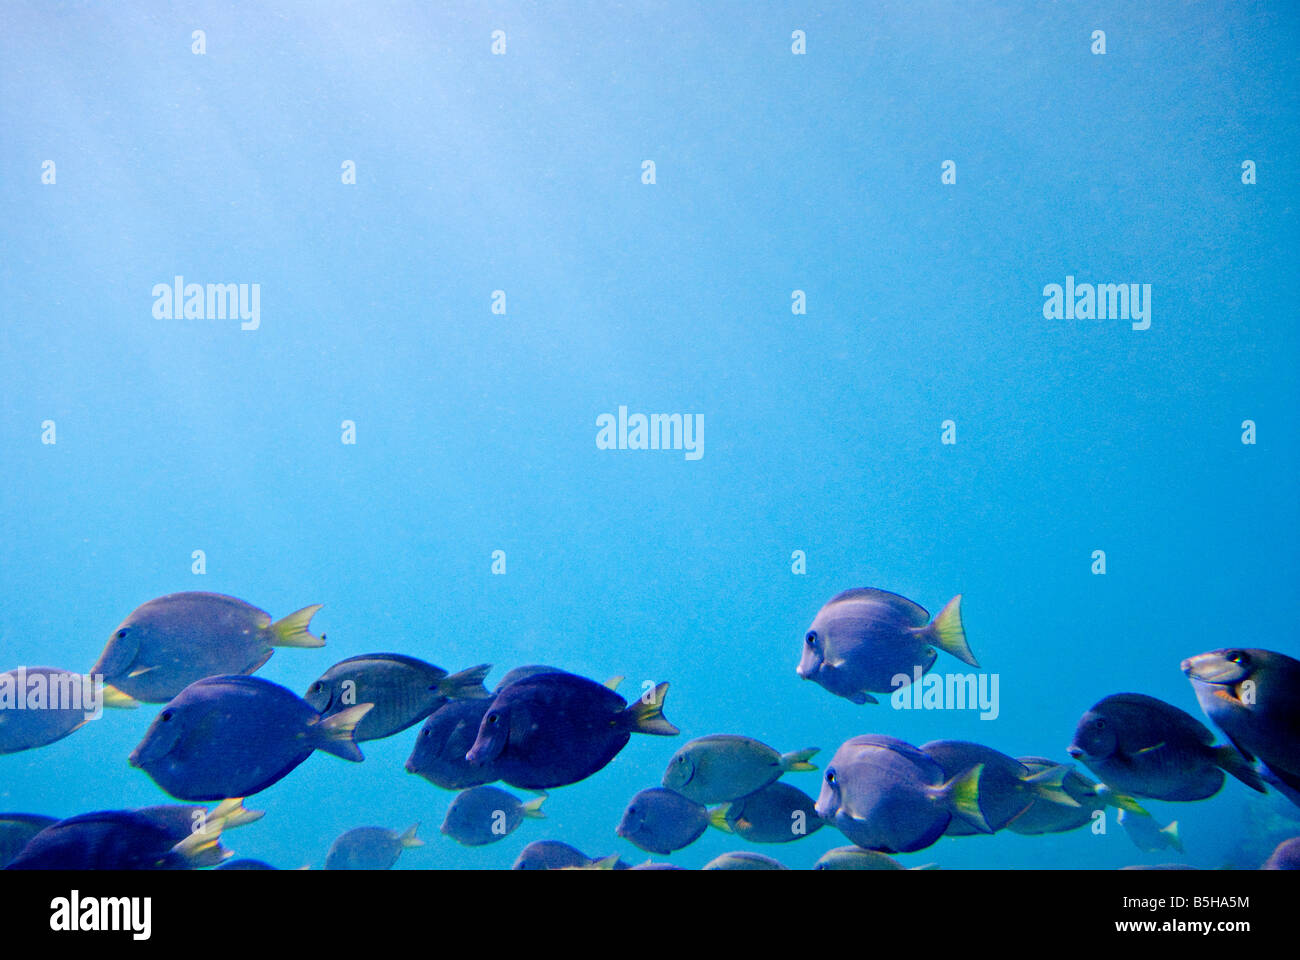 St. John, US Virgin Islands - eine Schule der lila Fische schwimmen durch das schöne blaue Wasser der Karibik. Unterwasser shot mit Copyspace. Stockfoto